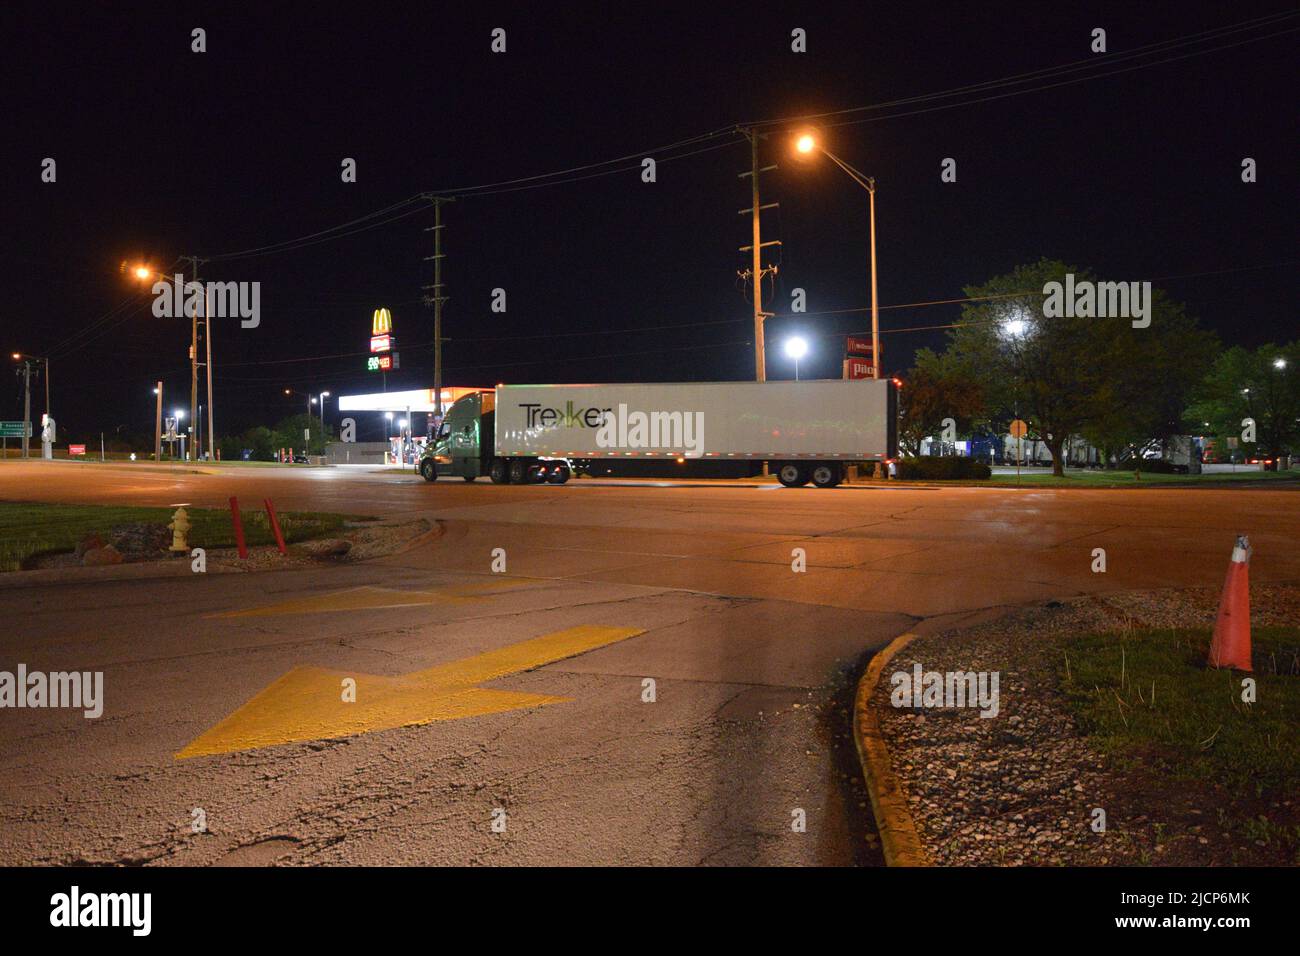 Foto nocturna de un remolque de camión Trekker que sale de una parada de camión en Monee Illinois Foto de stock